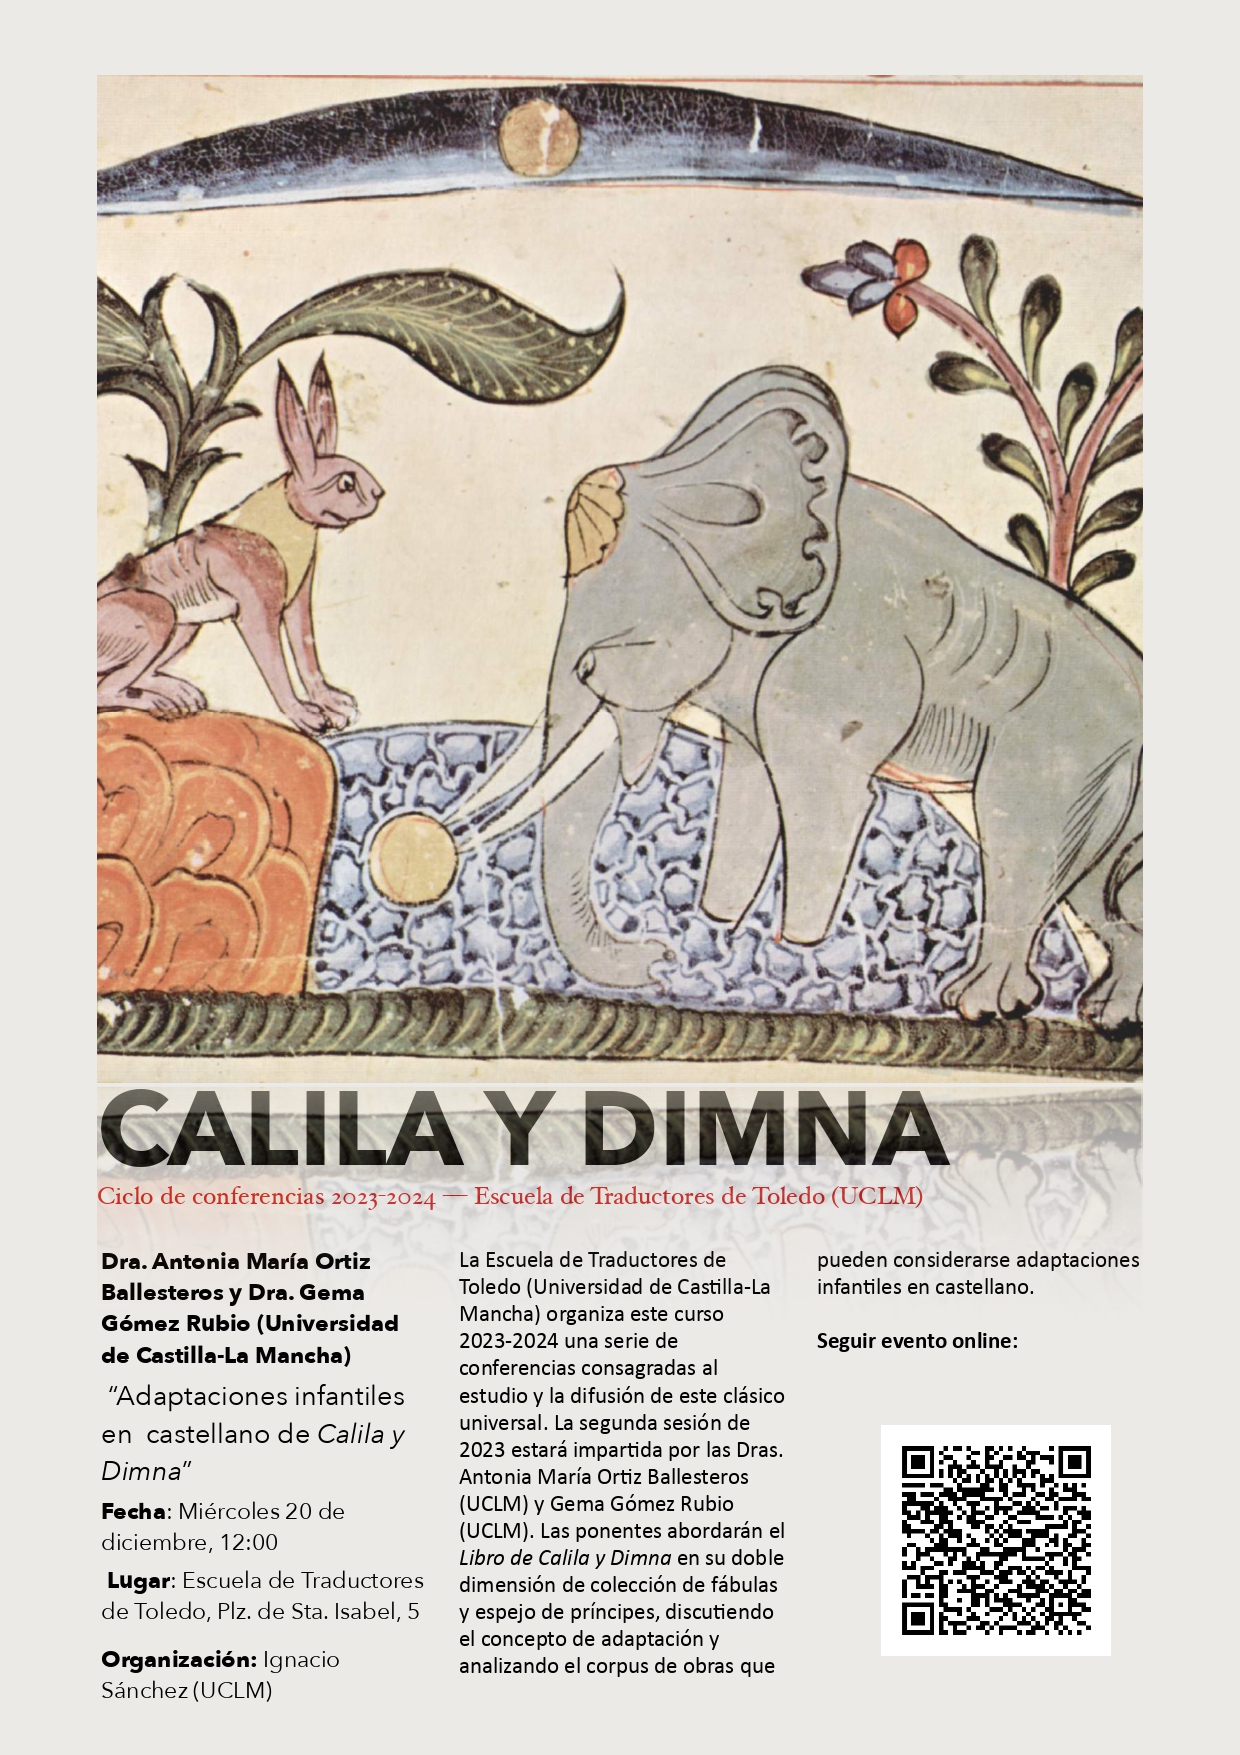 Segunda conferencia del ciclo Calila y Dimna